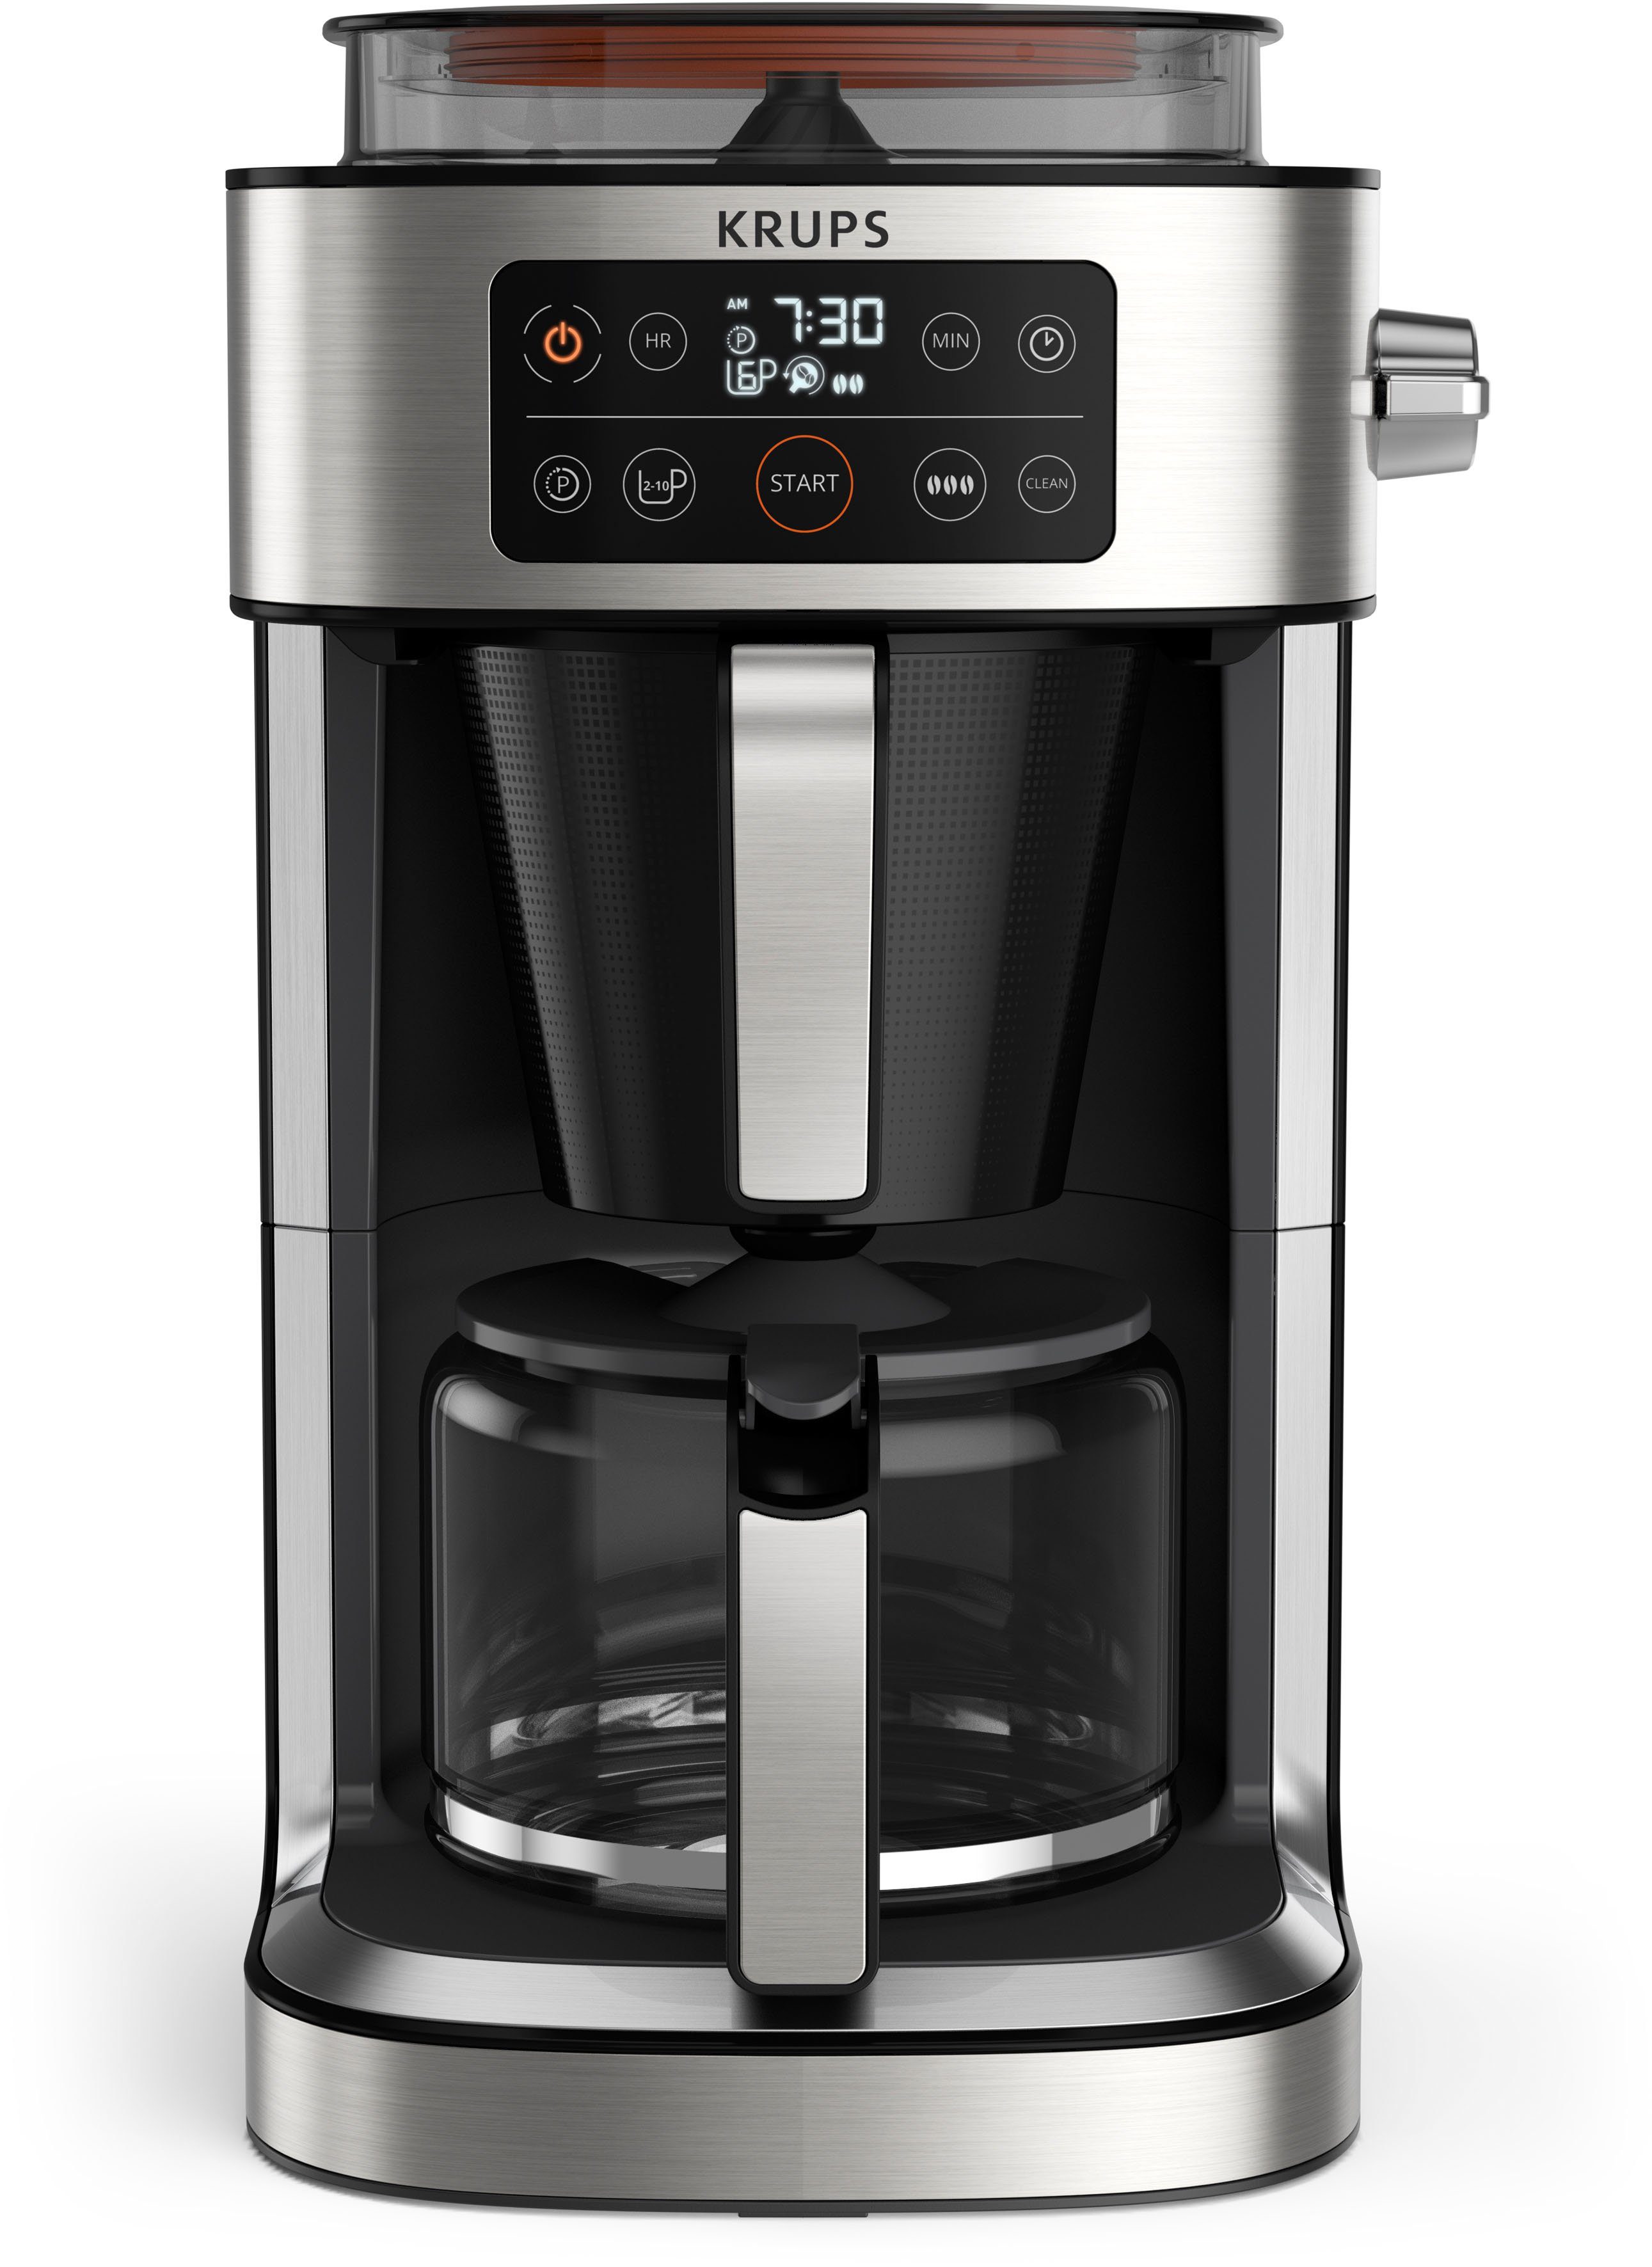 Beliebtes Sonderpreis-Schnäppchen frischen bis 400 g Kaffee Partner, Kaffeekanne, 1,25l KM760D integrierte Krups für Kaffee-Vorratsbox zu Aroma Filterkaffeemaschine